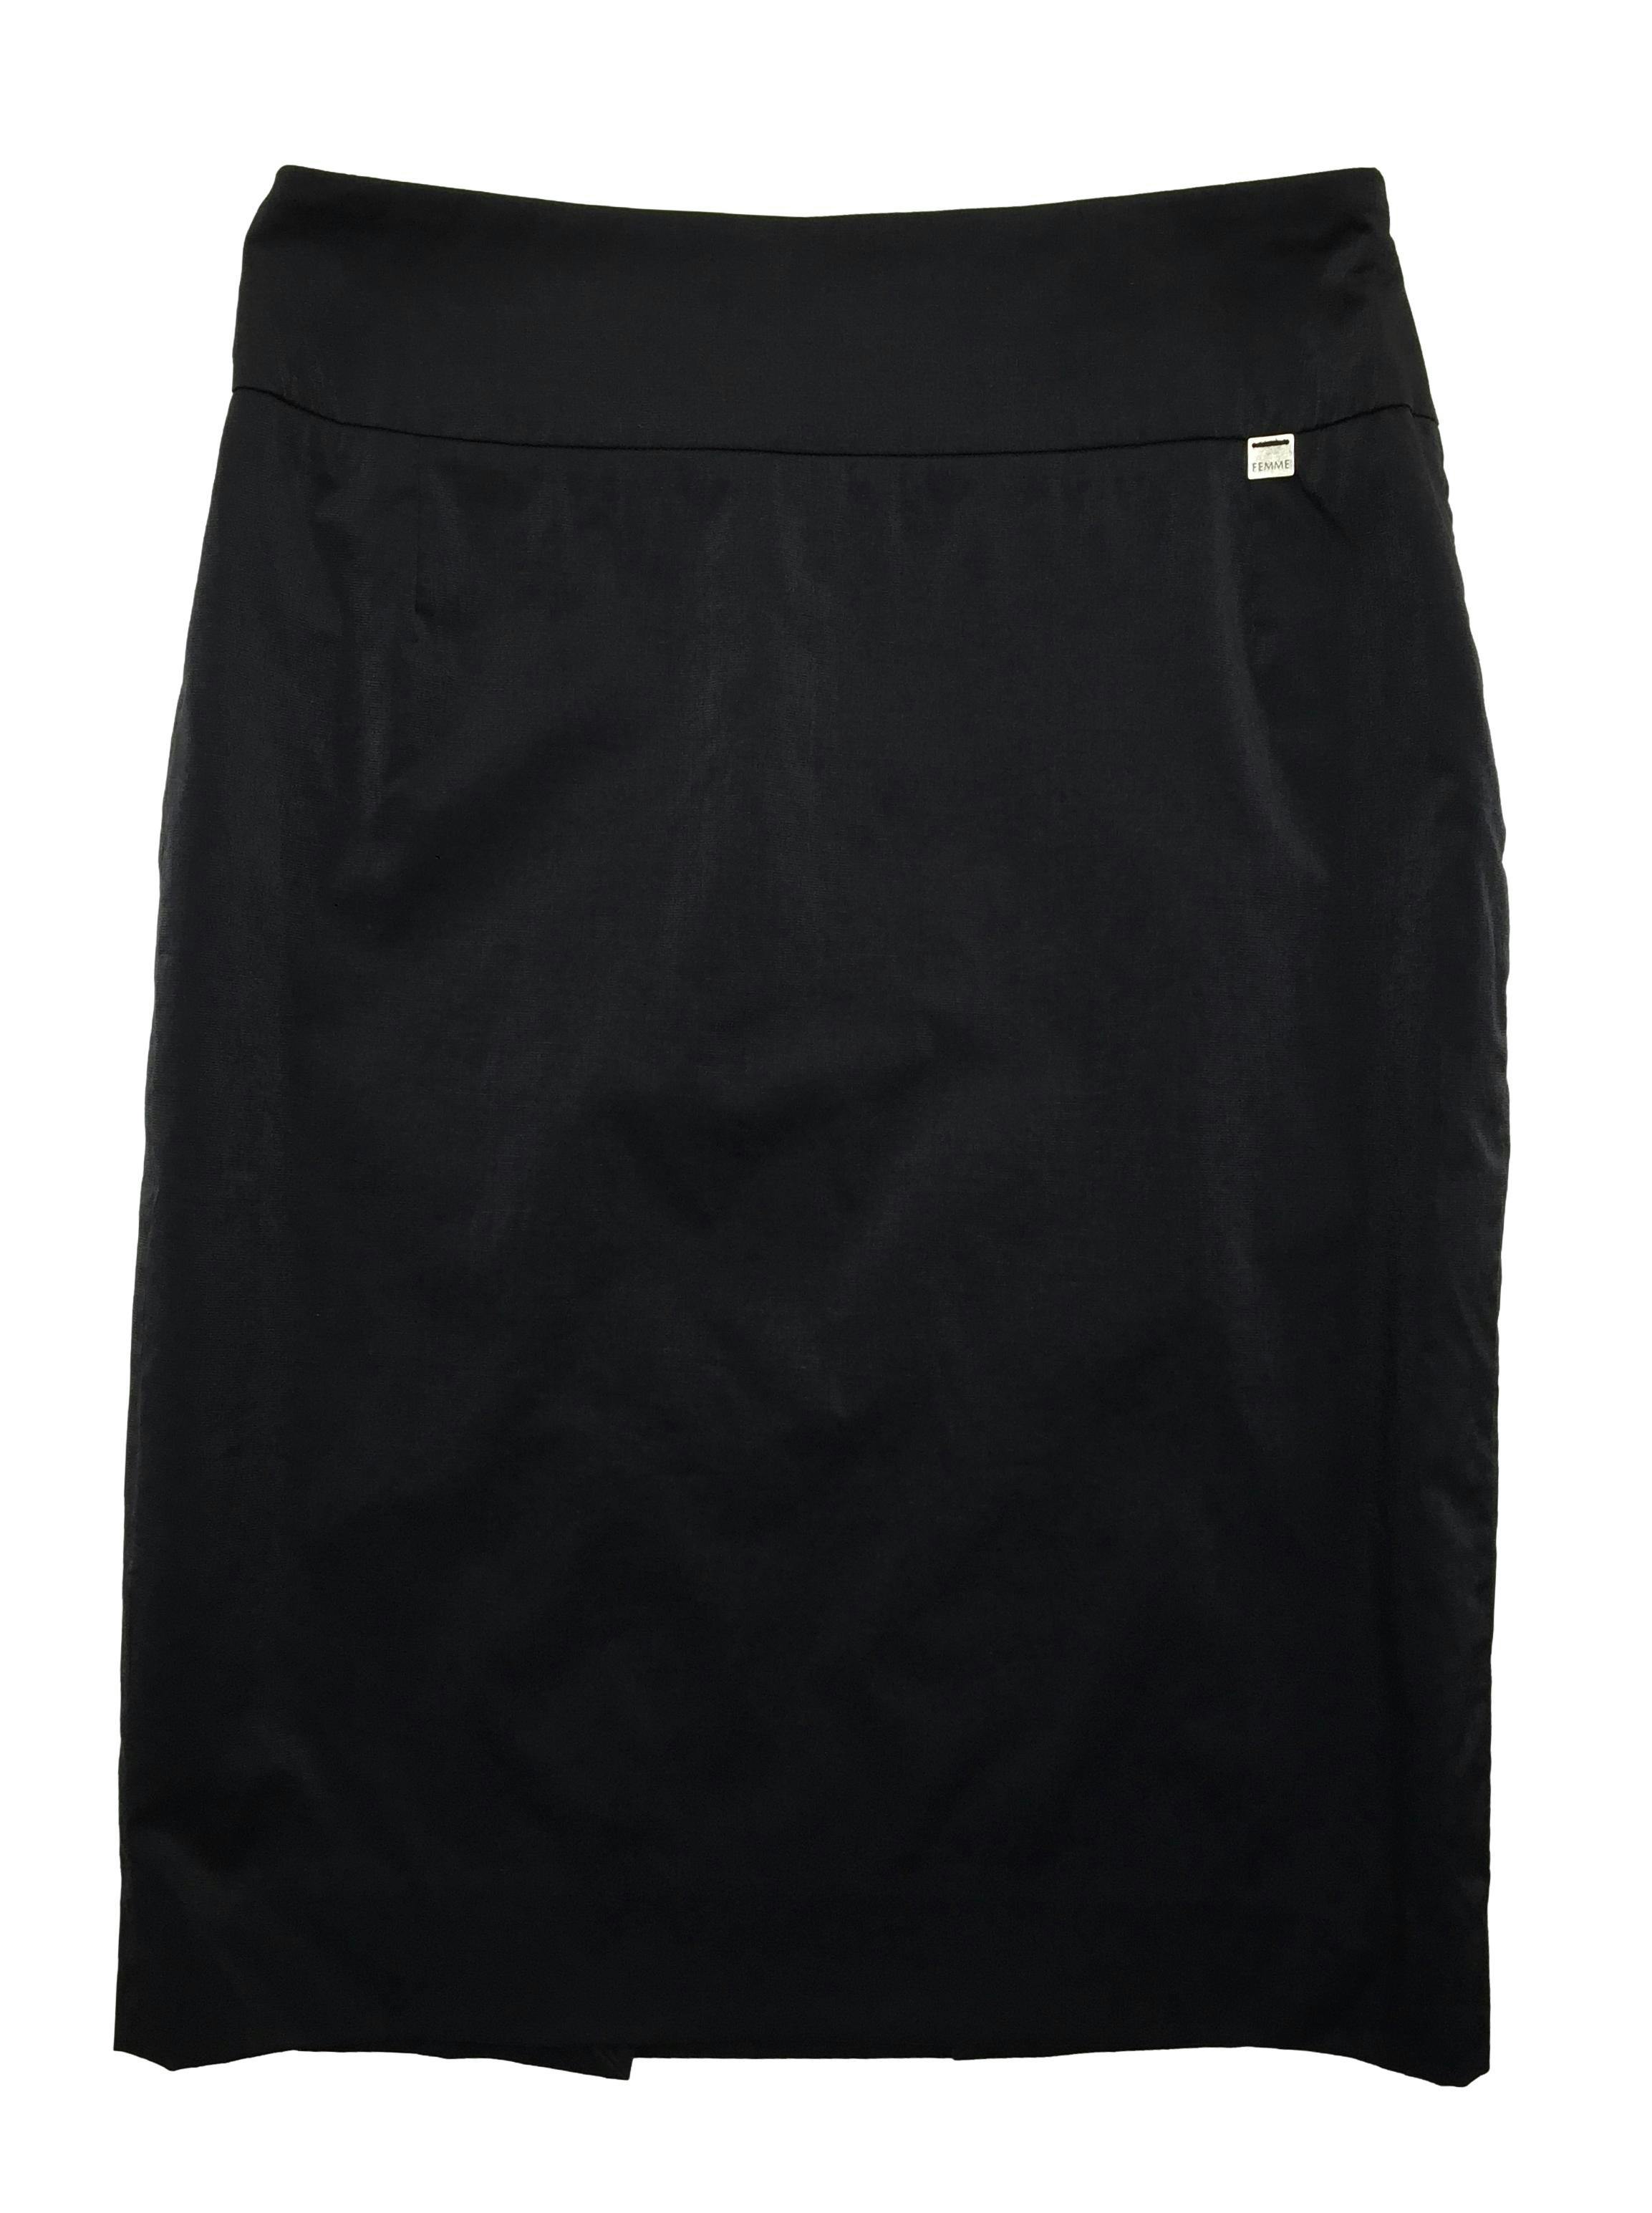 Falda sastre Femme de tela negra ligeramente satinada, tiene forro, cierre lateral y abertura posterior. Cintura 76cm, Largo 61cm.